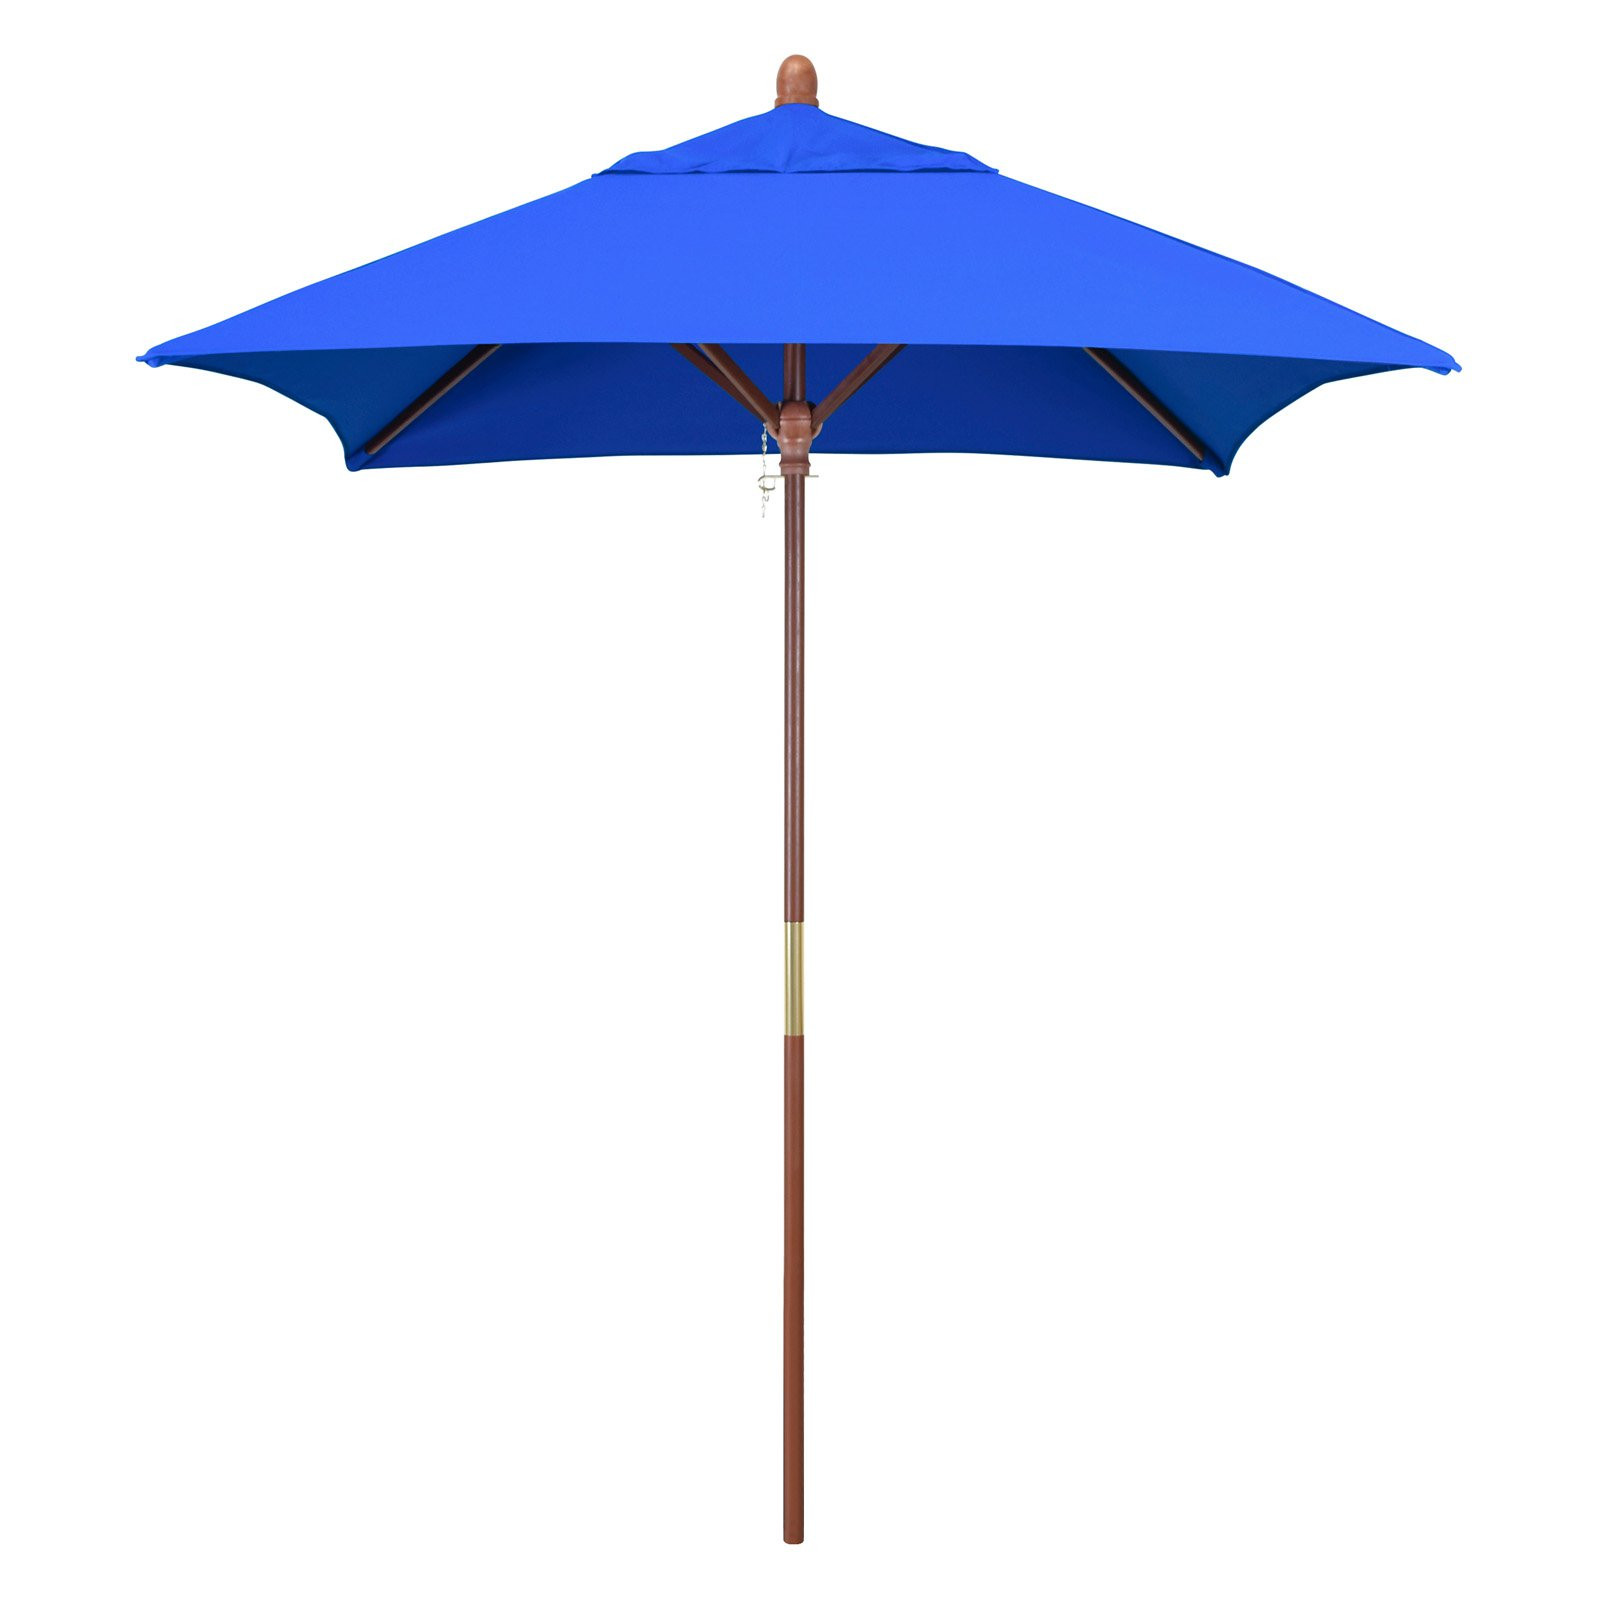 Best ideas about Sunbrella Patio Umbrellas
. Save or Pin California Umbrella 6 ft Square Marenti Wood Sunbrella Now.